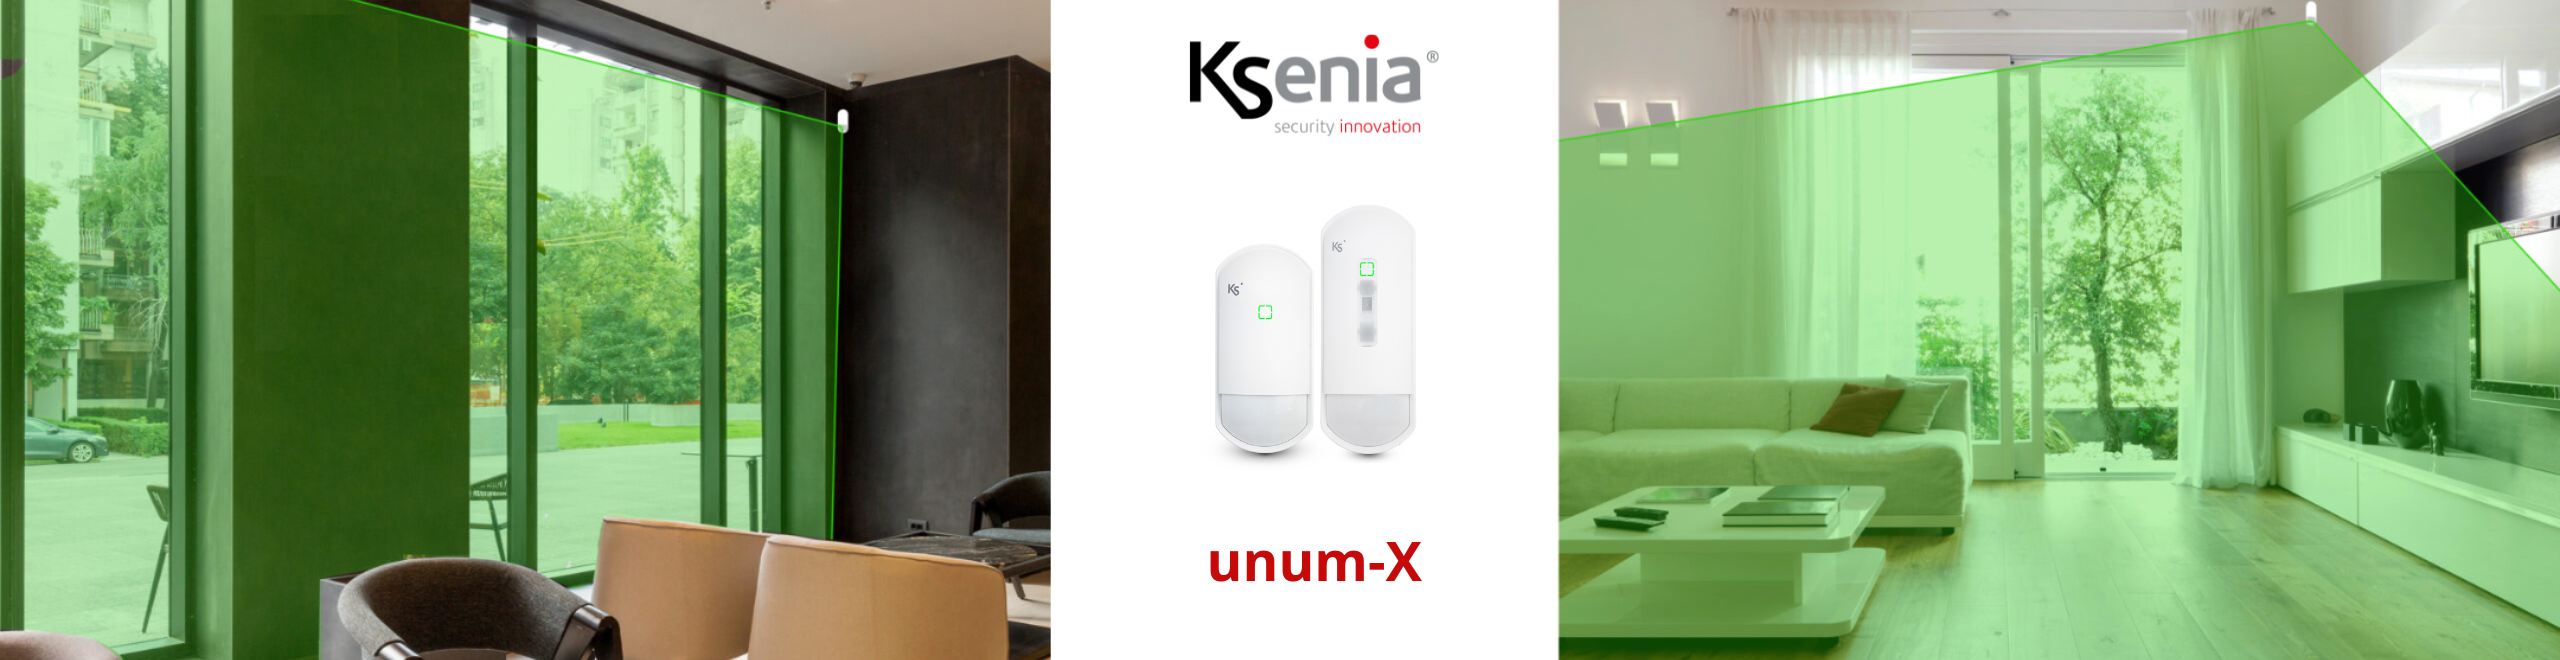 unum-X: Nová řada senzorů Ksenia Security